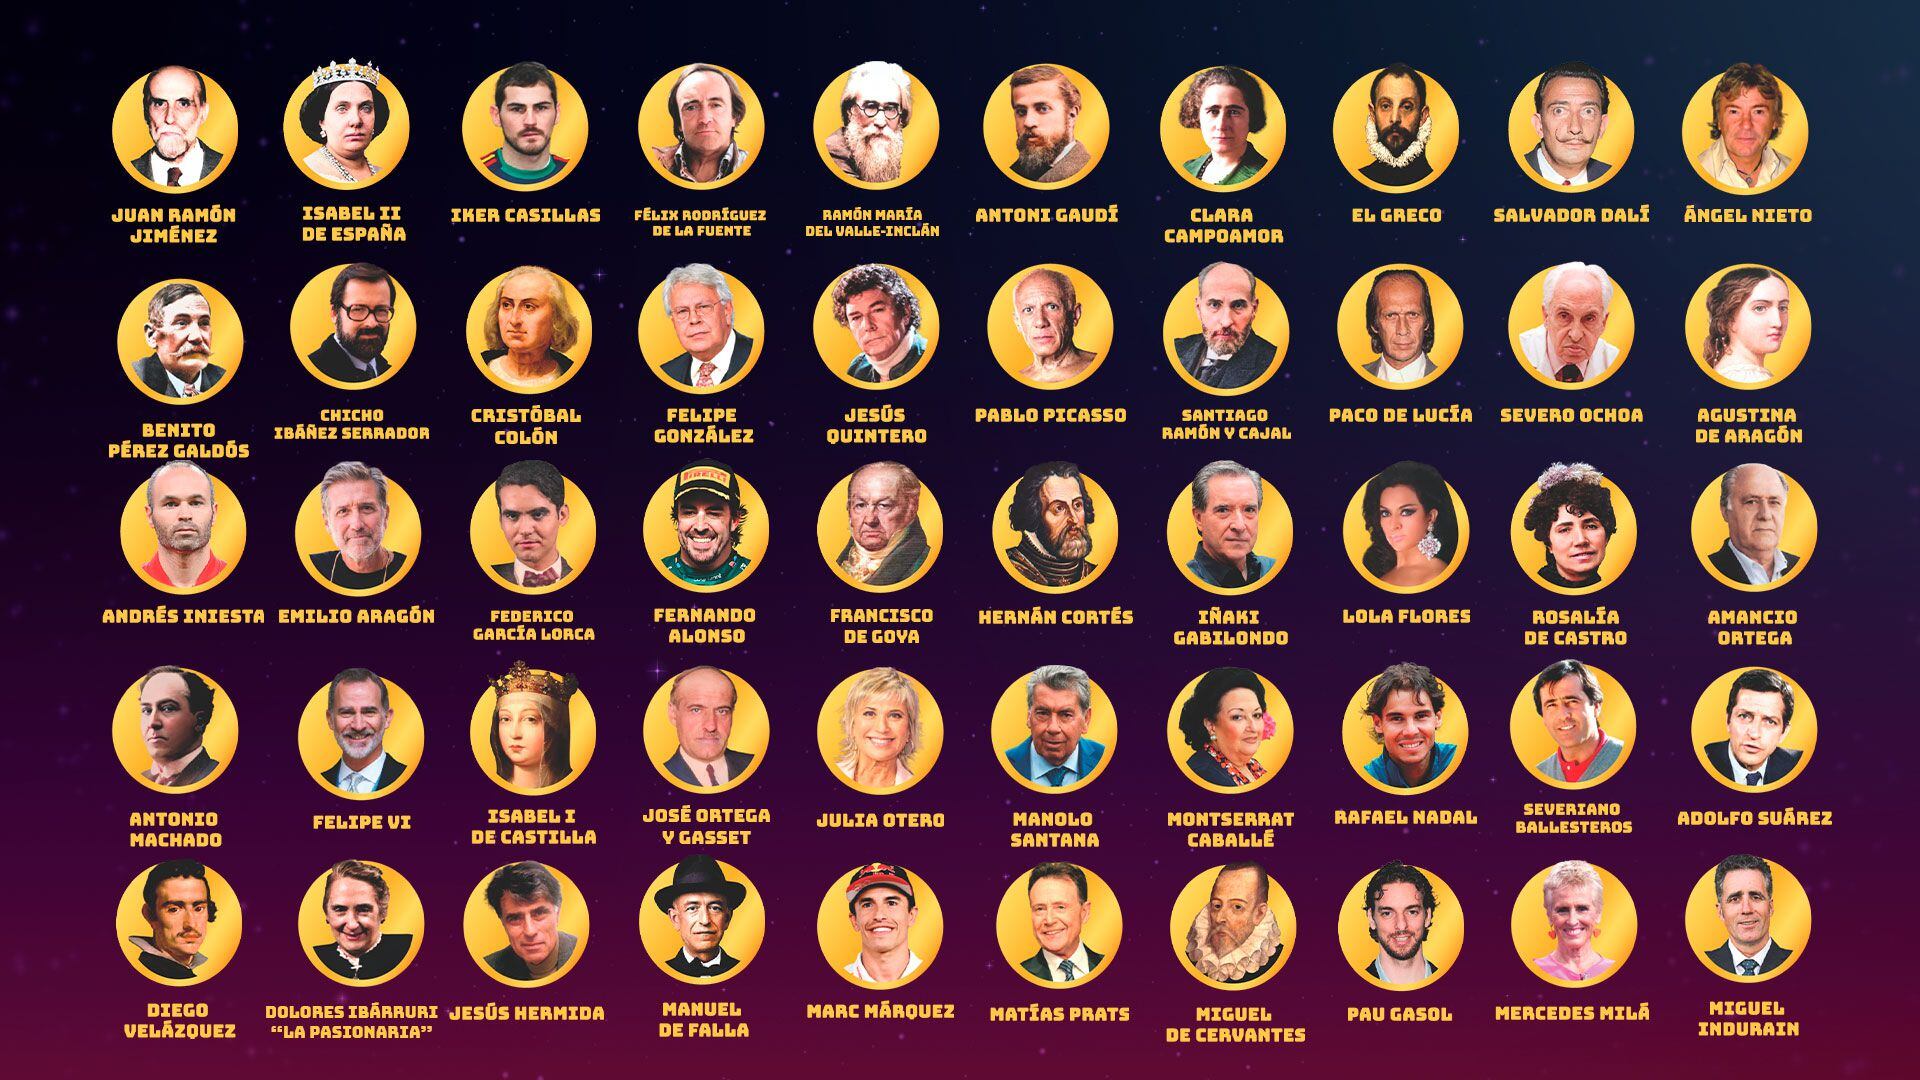 El mosaico con los 50 españoles seleccionados para las votaciones de 'El mejor de la historia'.